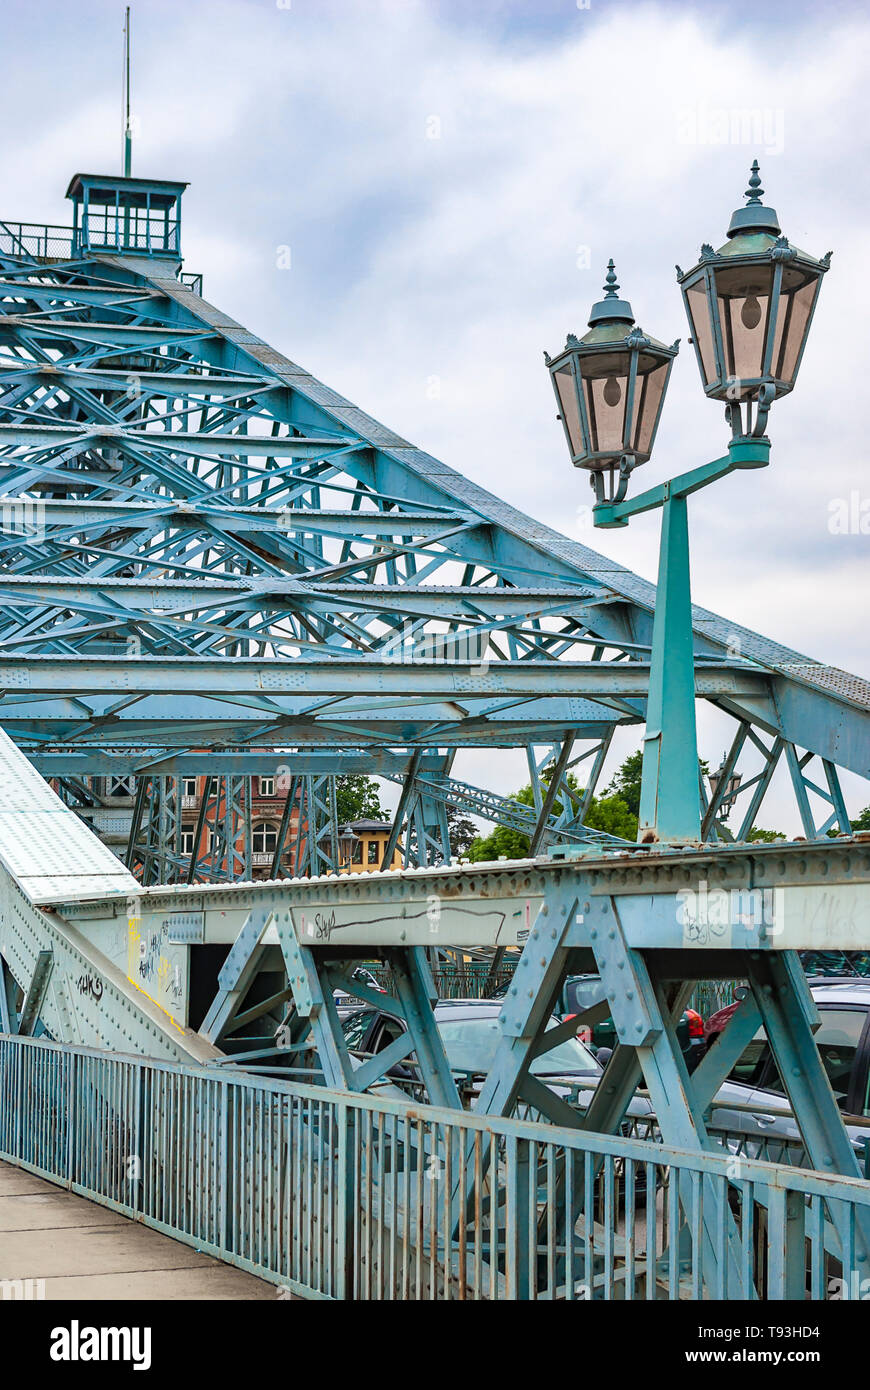 Verkehrssituation auf der historischen Brücke BLAUES WUNDER im Stadtteil Loschwitz, Dresden, Sachsen, Deutschland, Europa. Stockfoto